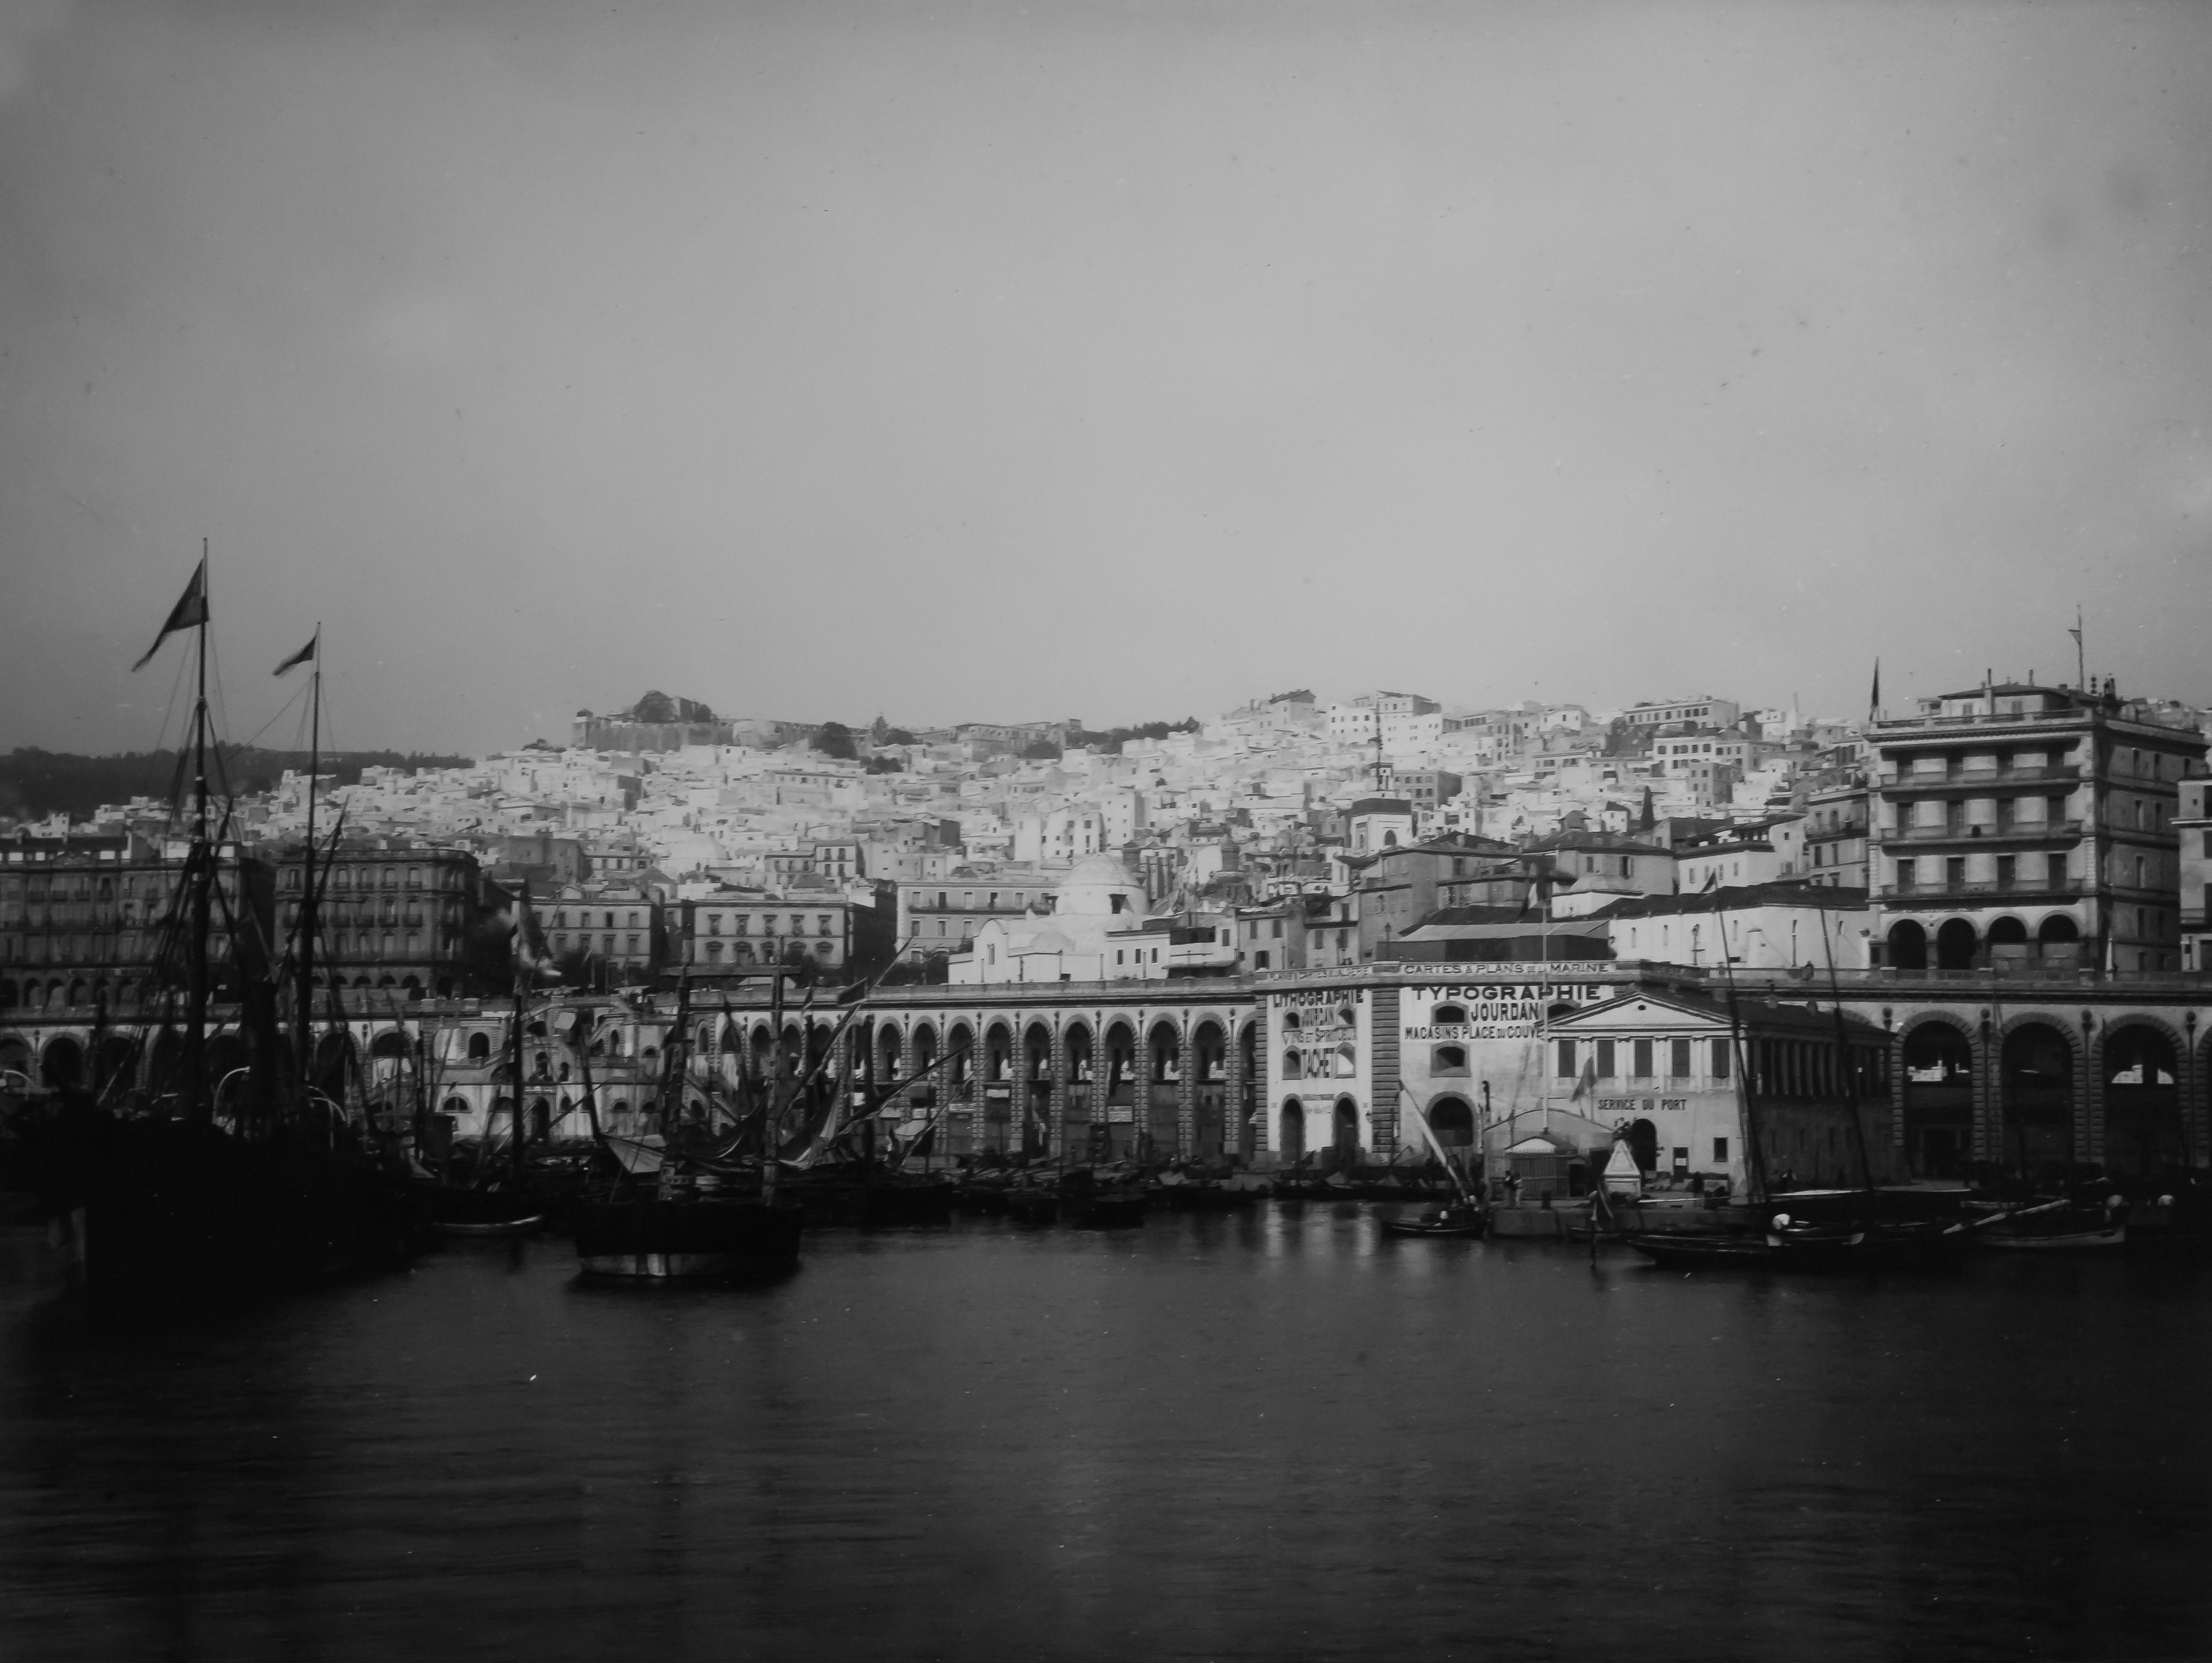 MHNT - Trutat - Le port d'Alger, Algerie, 1881